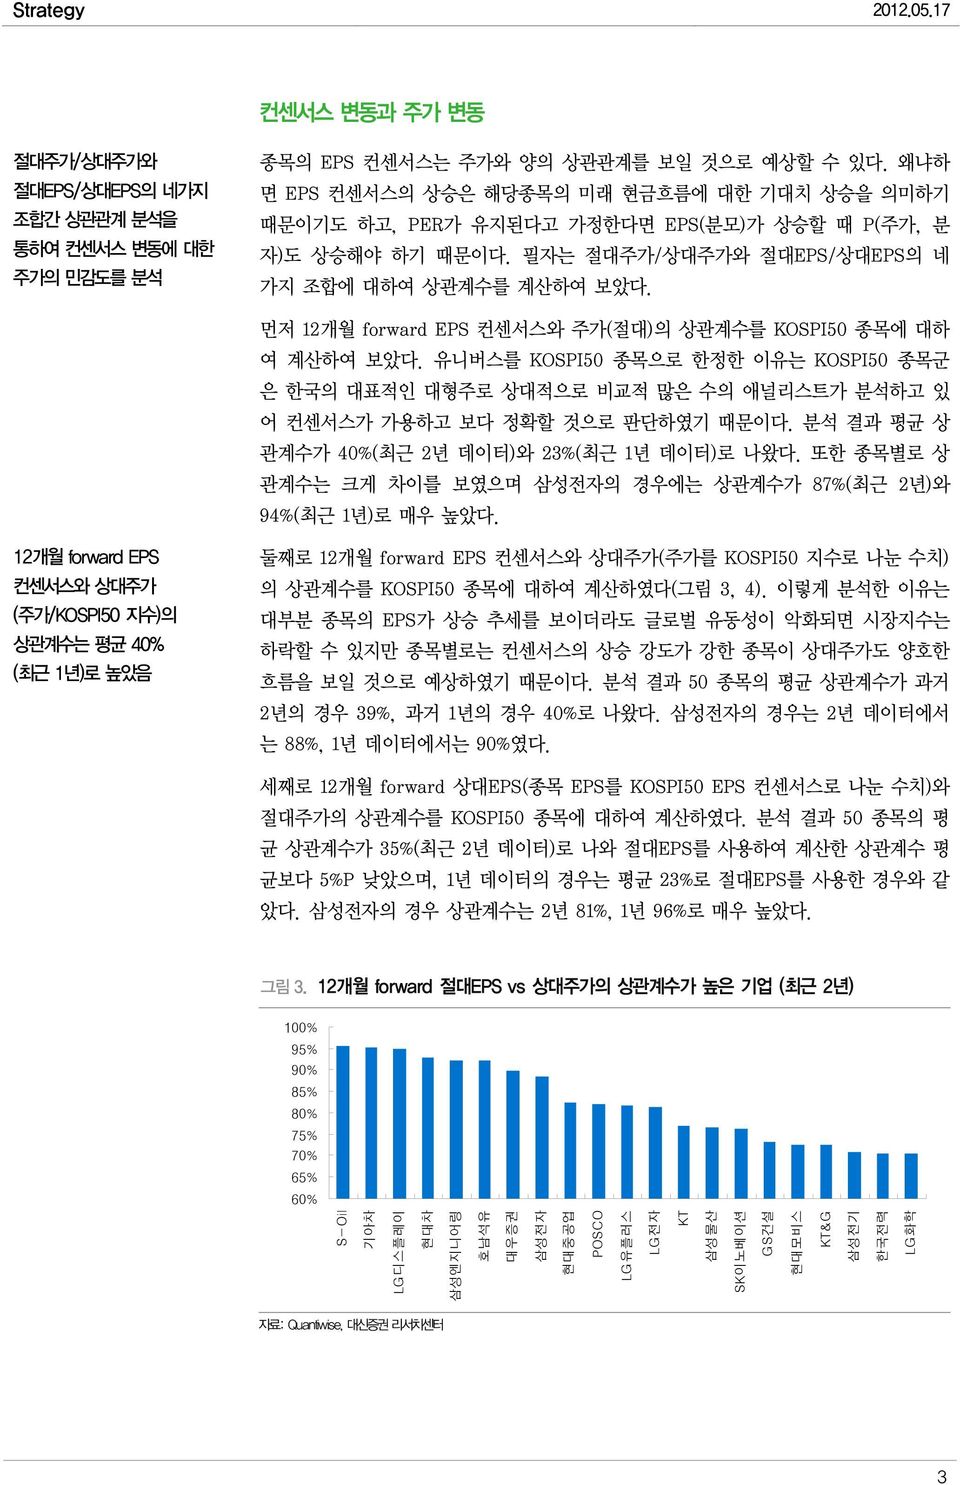 먼저 12개월 forward EPS 컨센서스와 주가(절대)의 상관계수를 KOSPI 종목에 대하 여 계산하여 보았다. 유니버스를 KOSPI 종목으로 한정한 이유는 KOSPI 종목군 은 한국의 대표적인 대형주로 상대적으로 비교적 많은 수의 애널리스트가 분석하고 있 어 컨센서스가 가용하고 보다 정확할 것으로 판단하였기 때문이다.